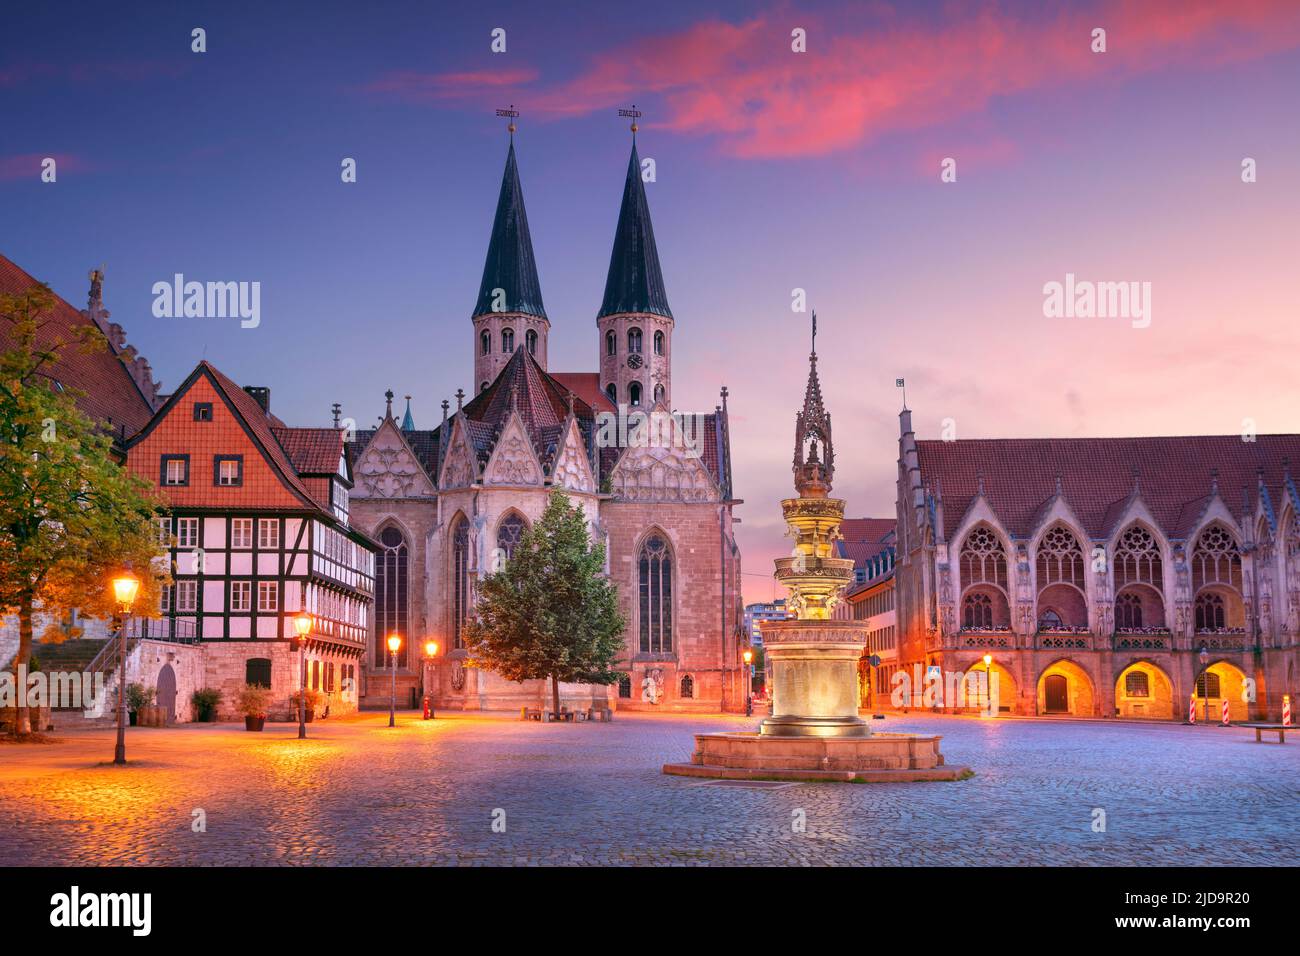 Brunswick, Alemania. Imagen del paisaje urbano del centro histórico de Brunswick, Alemania, con la Iglesia de San Martini y el Ayuntamiento antiguo al atardecer en verano. Foto de stock